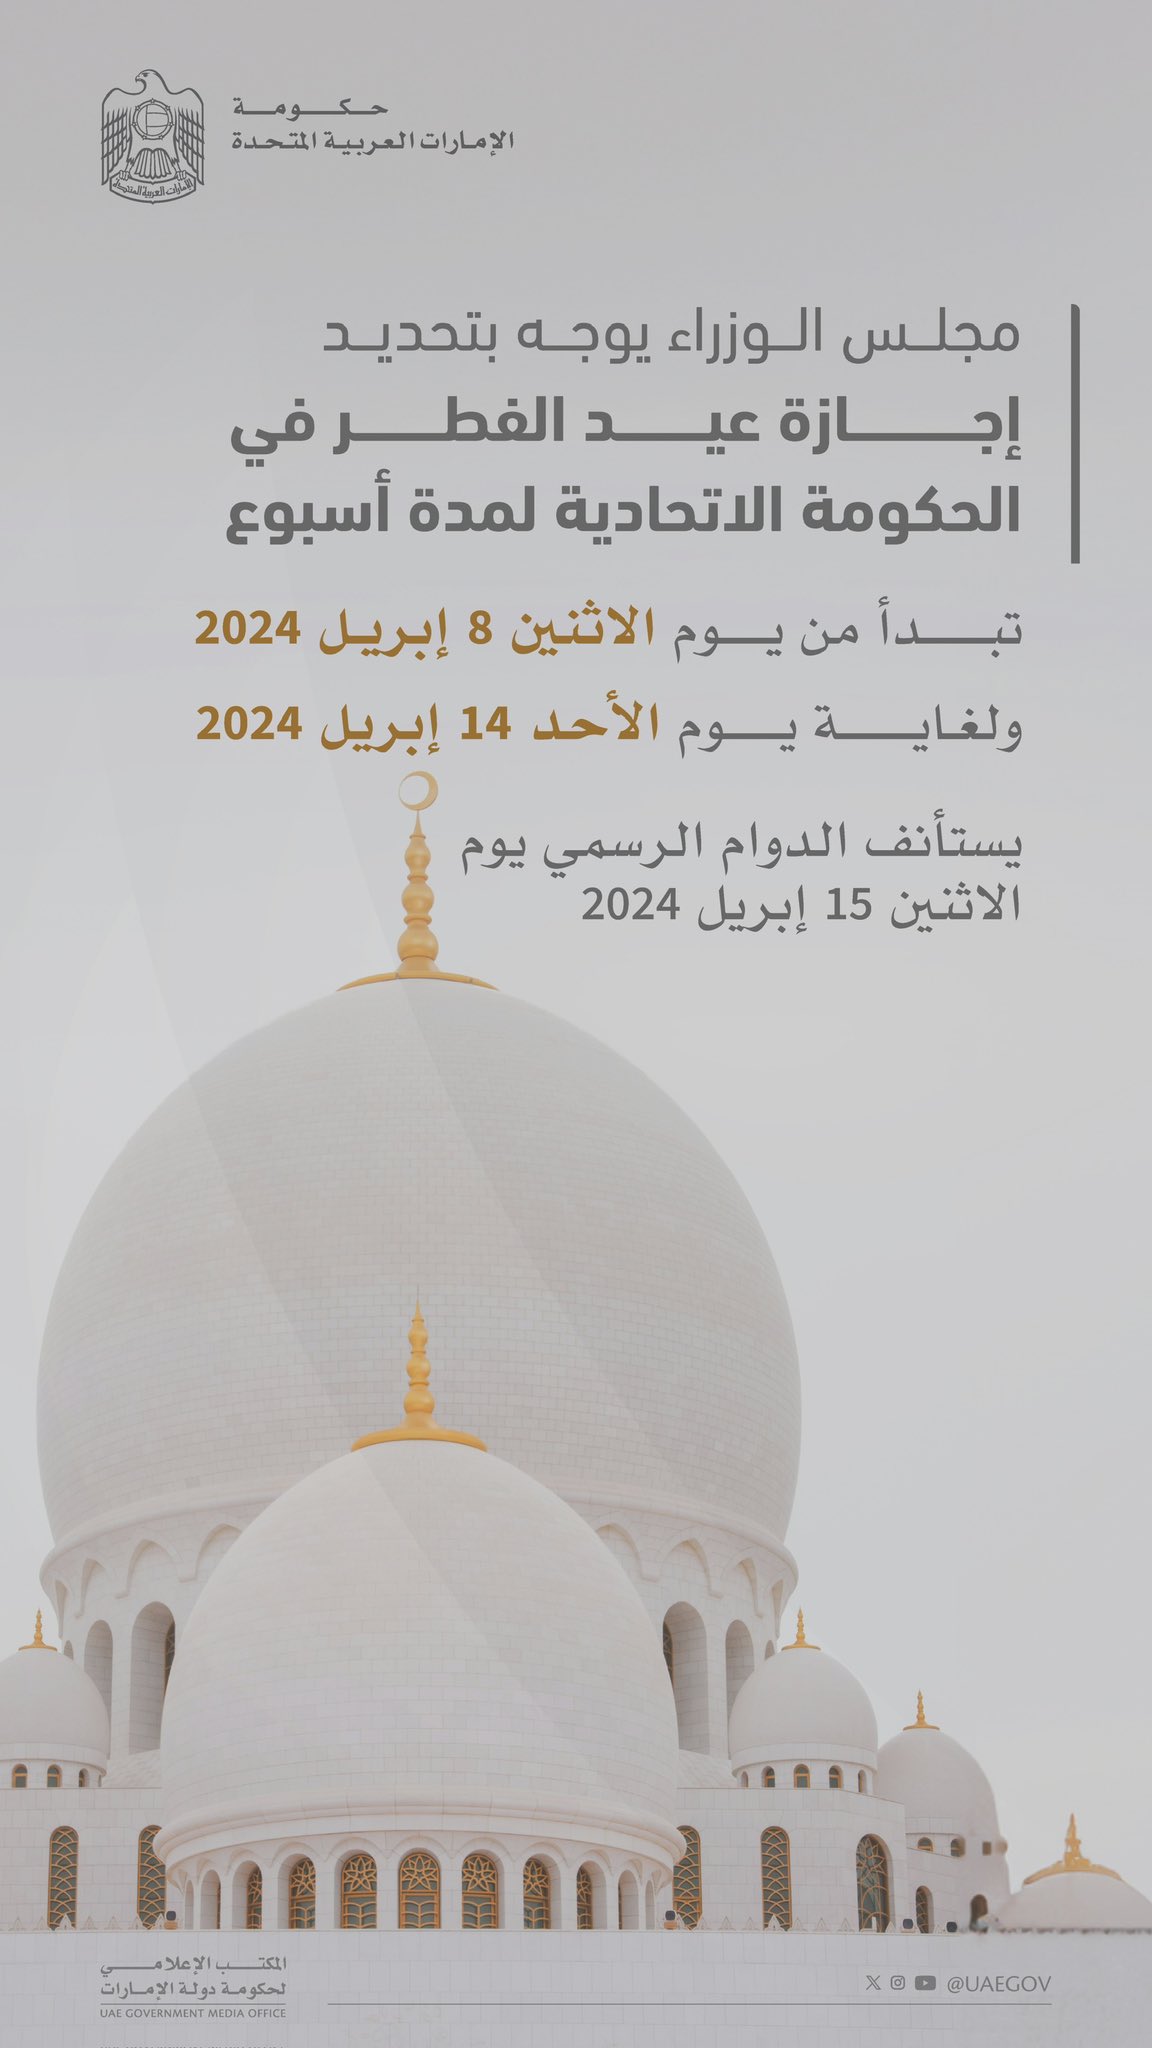 تم تأكيد مواعيد عطلة العيد للمدارس والعائلات في جميع أنحاء دبي والإمارات العربية المتحدة